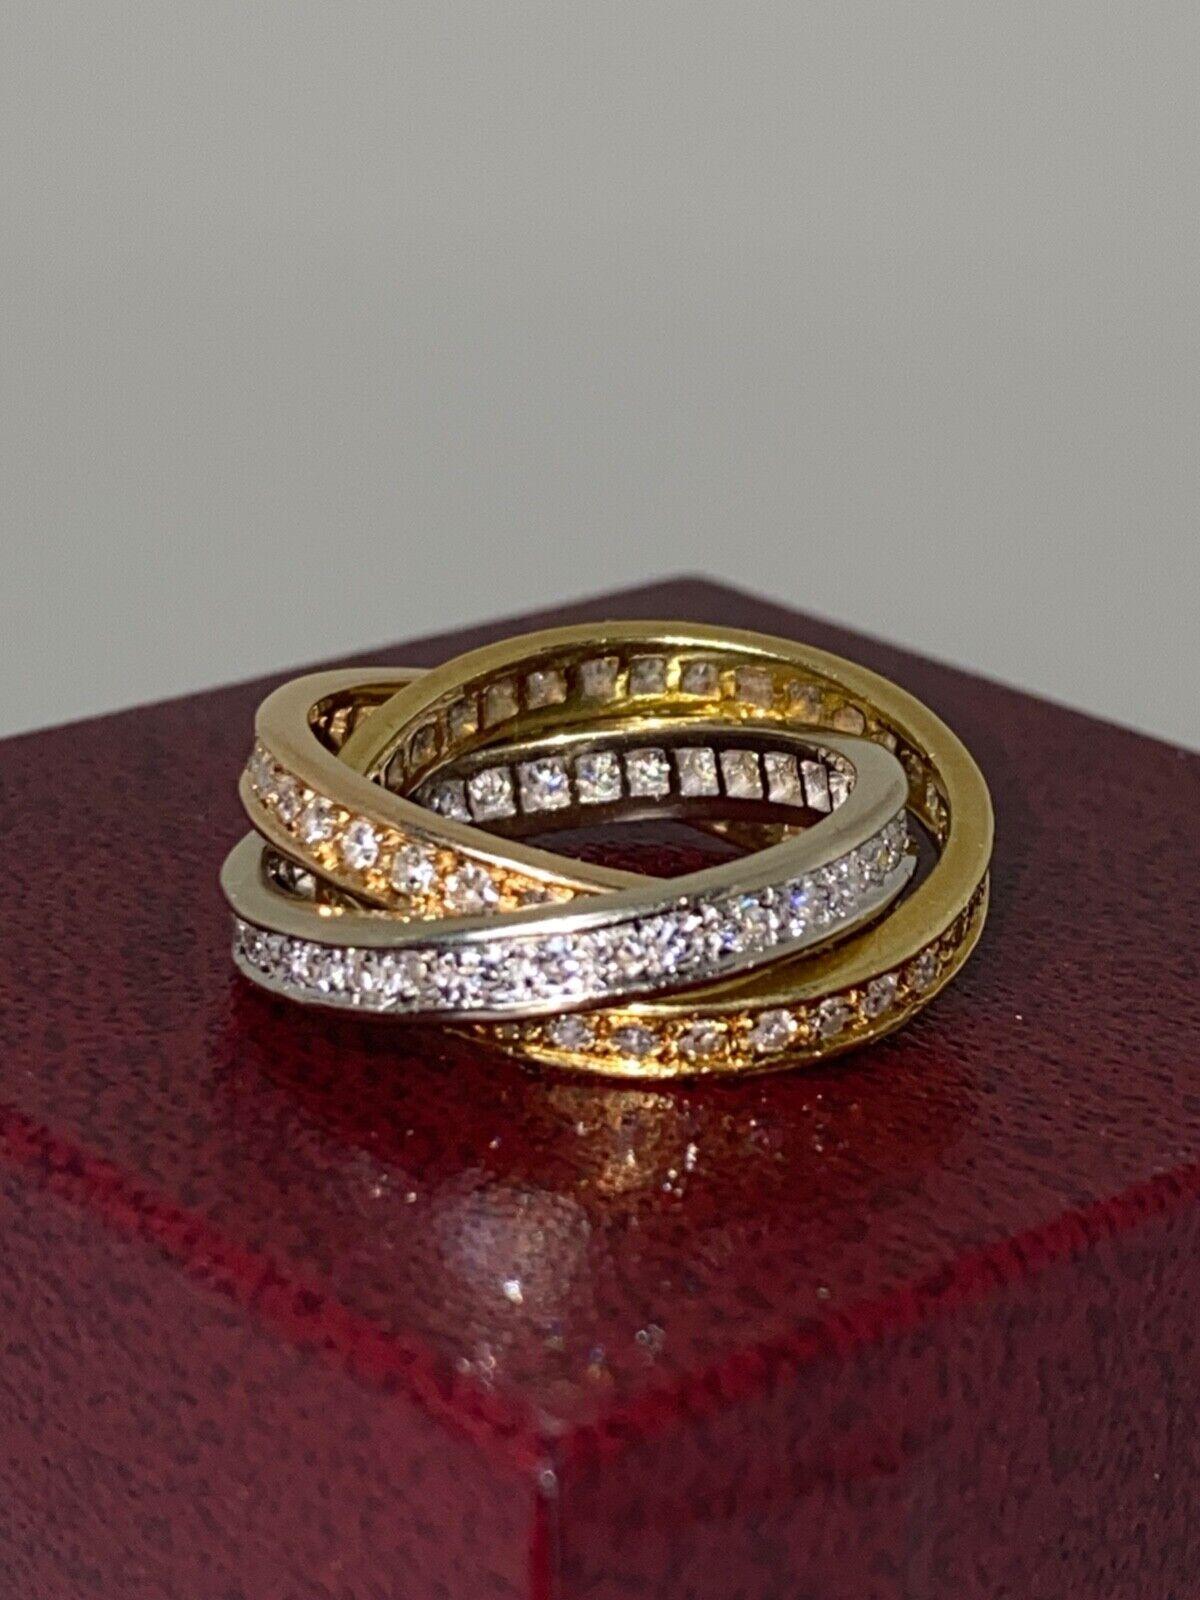 Conçus de manière iconique, les mariages russes ont été réalisés dans le style de Cartier, 
Exquise fabrication en or tricolore 18 carats (blanc, jaune et rose), 
Cette bague trinitaire est fabriquée à la main en France. 
(portant le poinçon